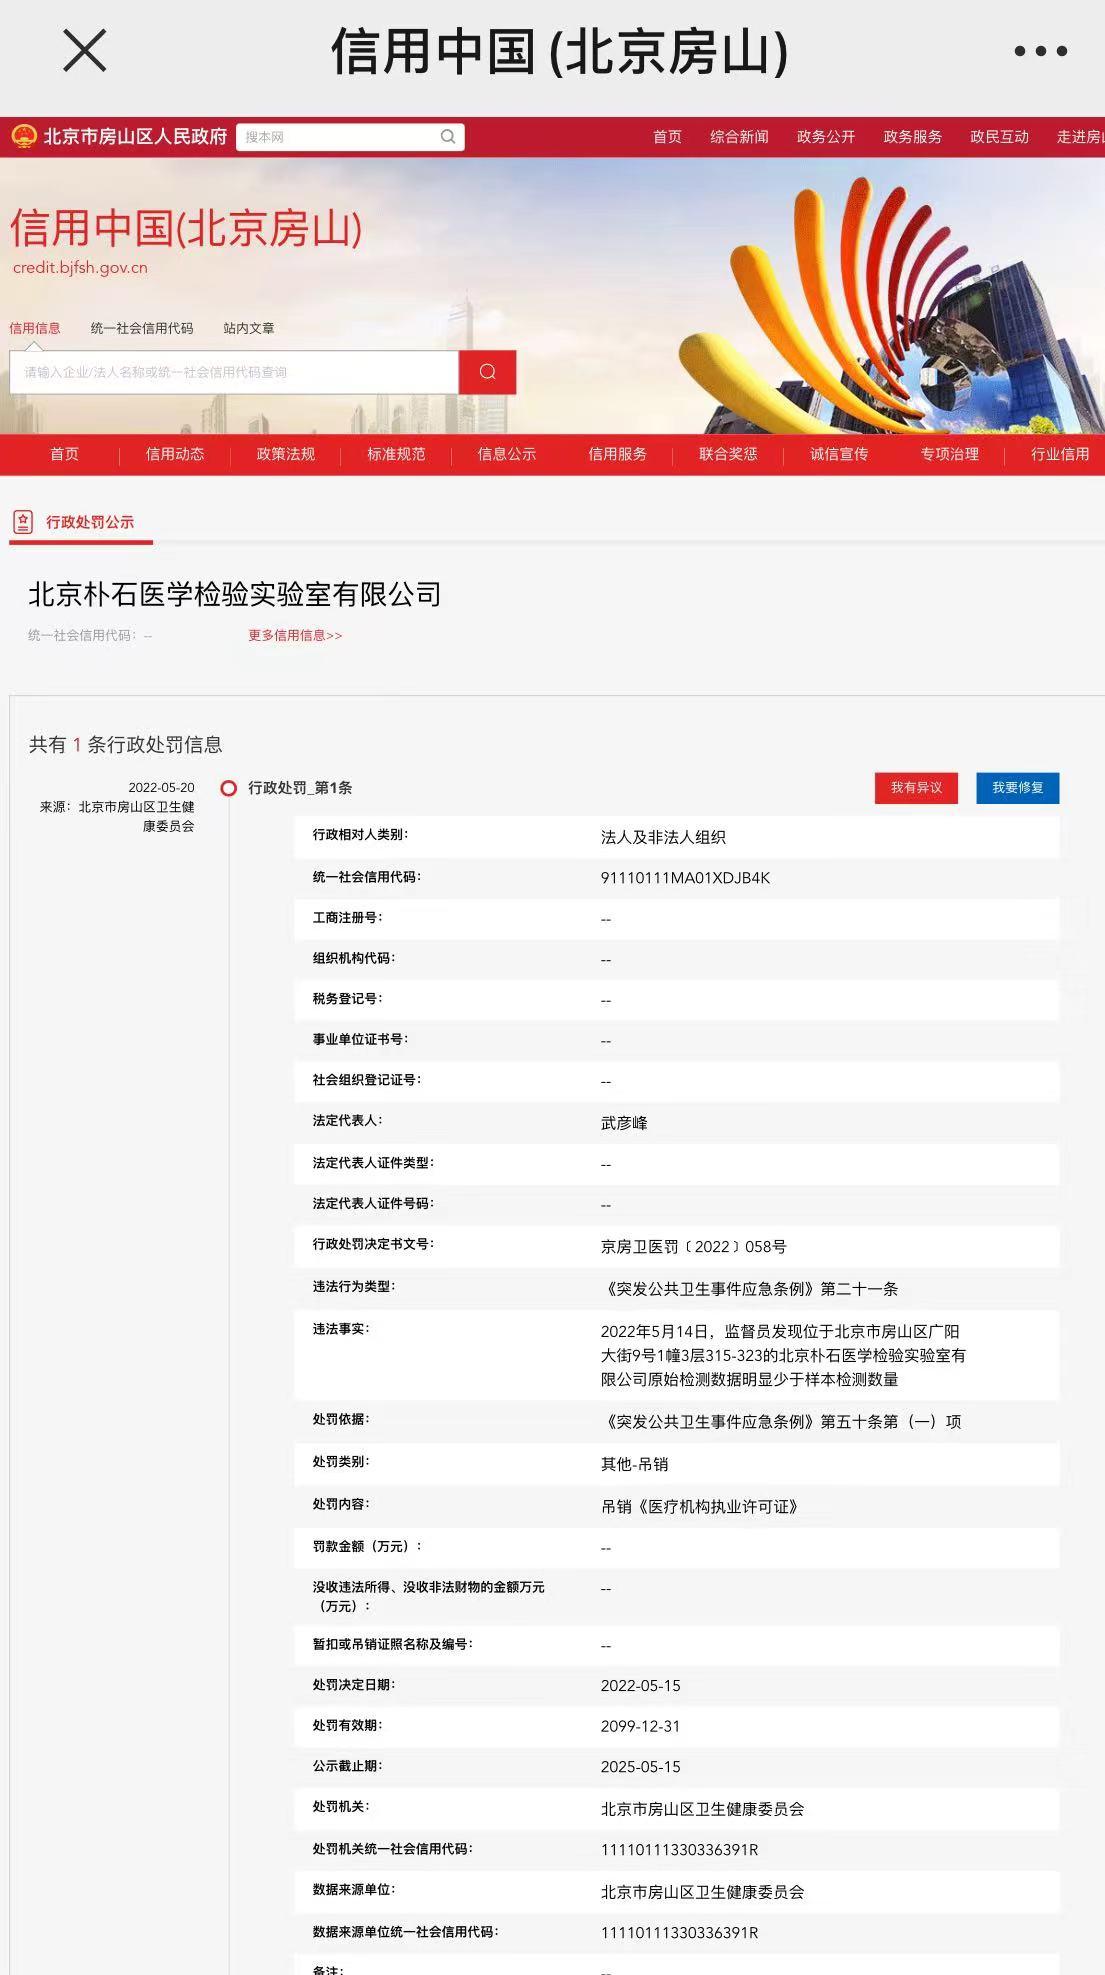 北京一检验实验室被吊销执业许可证：原始检测数据少于样本<font color="red">数量</font>